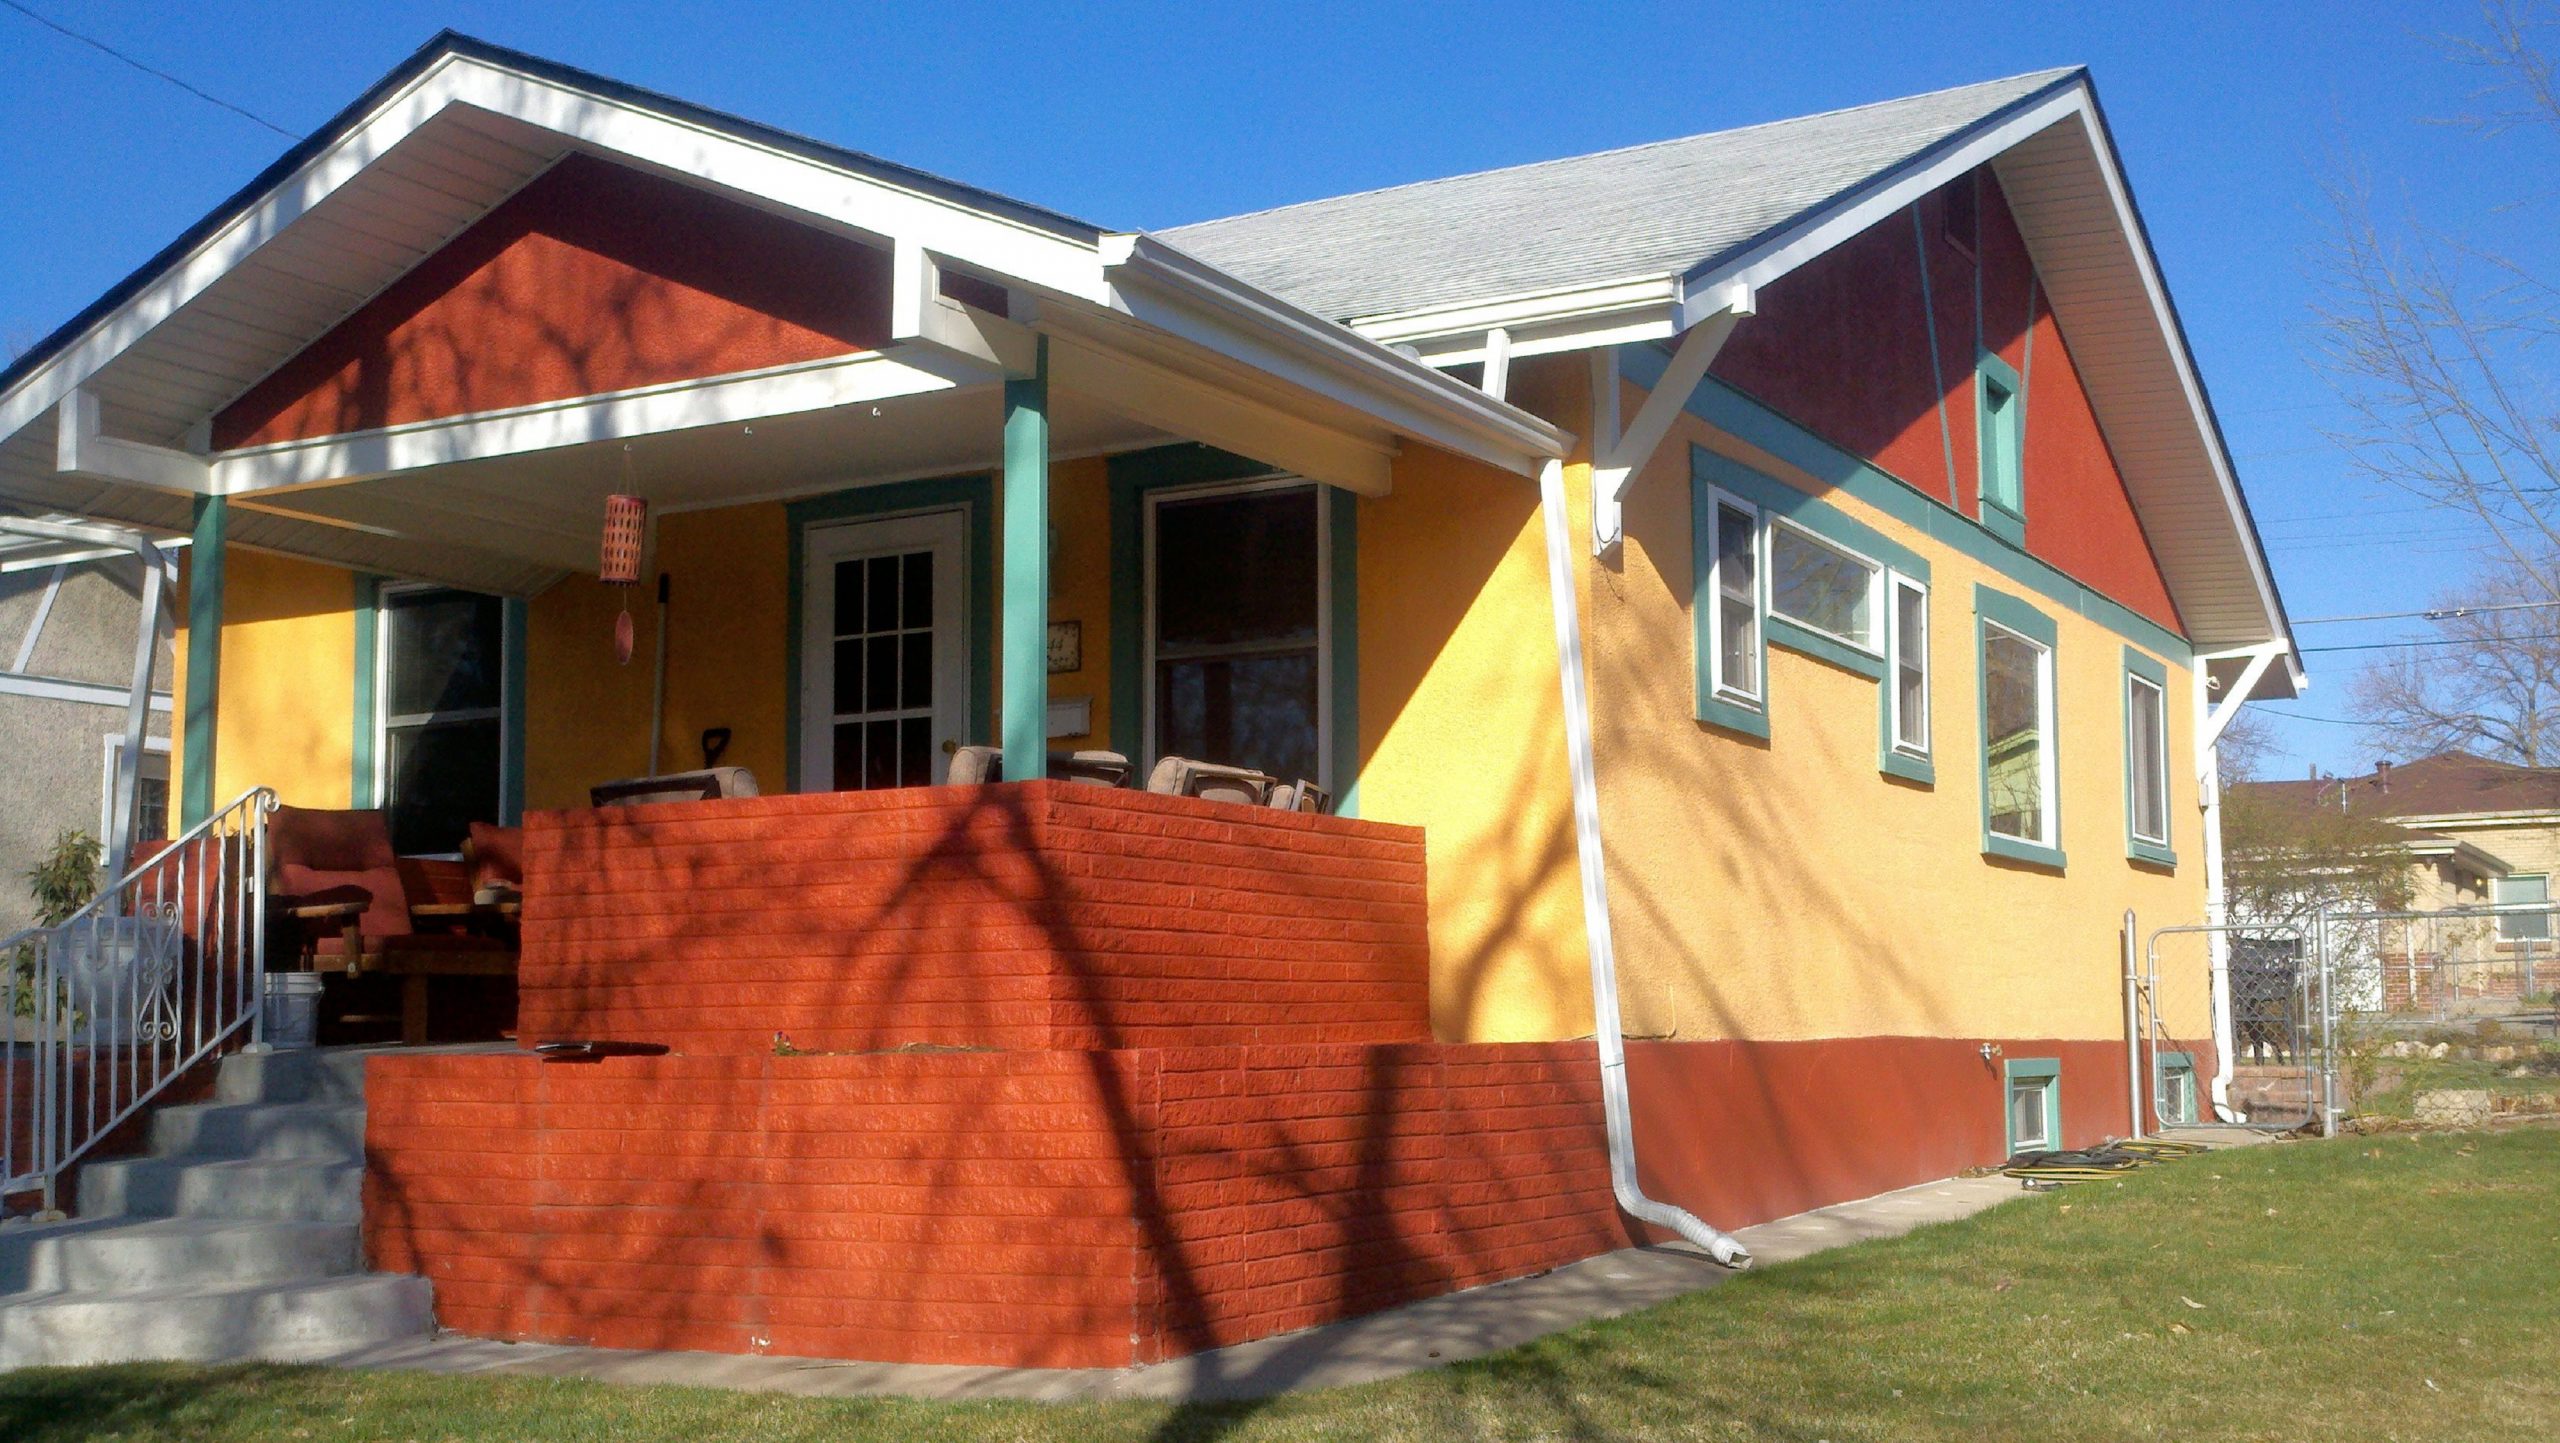 remodeling a historic home in denver 